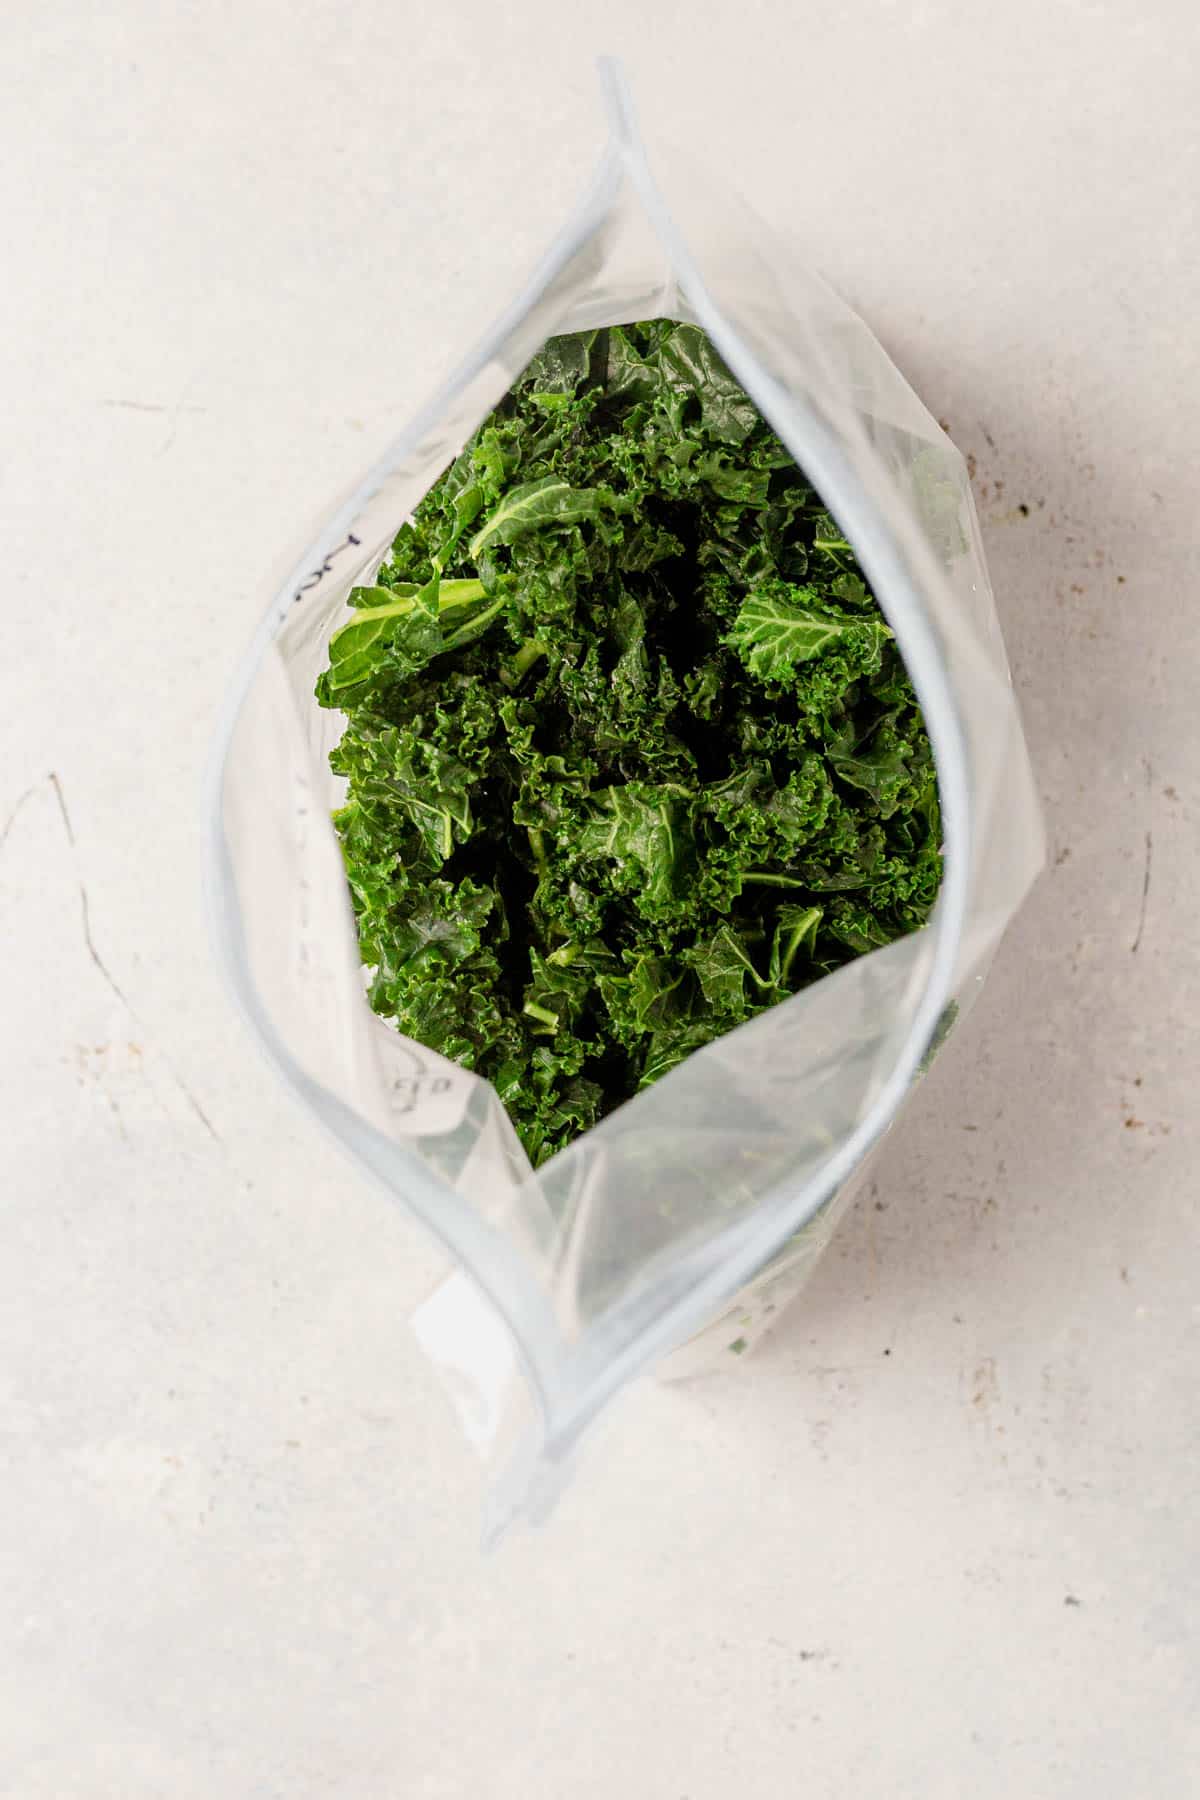 frozen kale in an airtight freezer bag